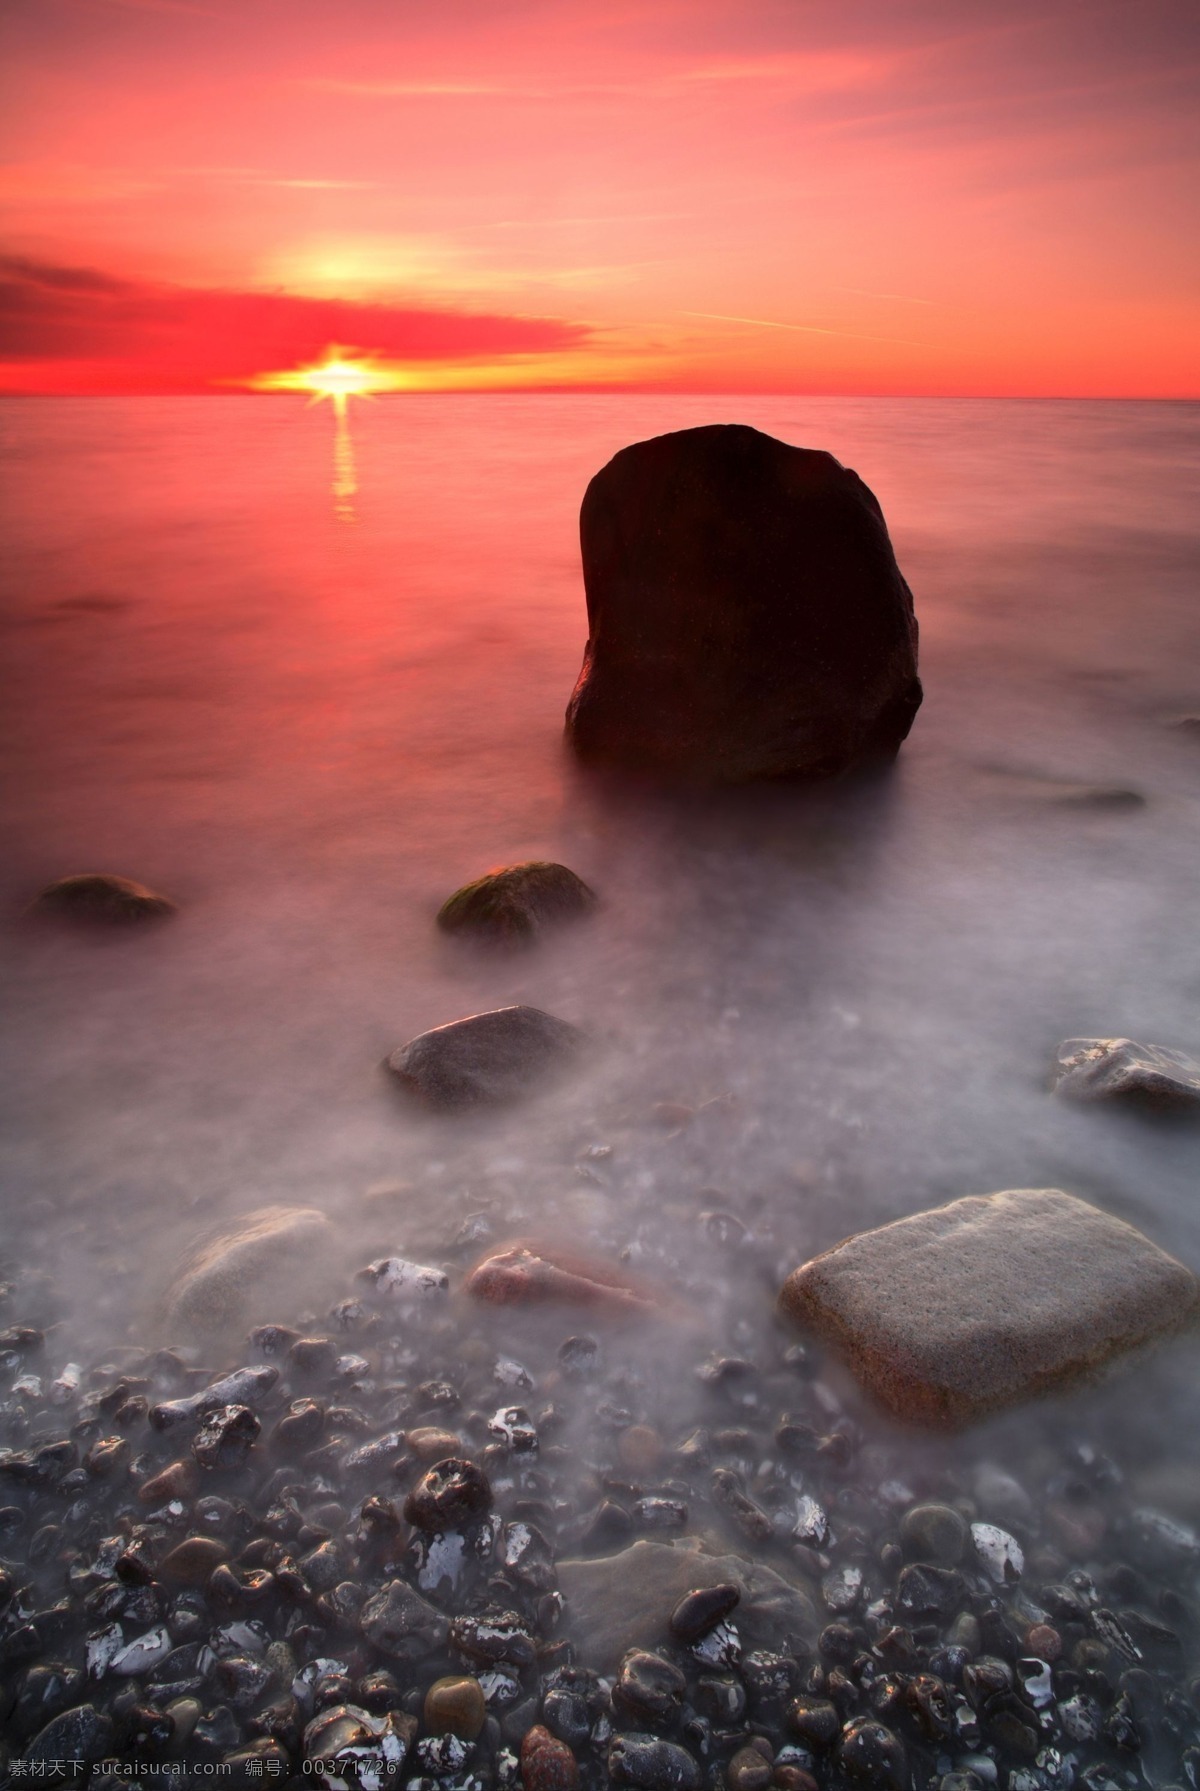 旅行 相关 素材图片 自然风光 景色 风景 夕阳 黄昏 石头 海滩 海洋 水 高清图片 旅游摄影 摄影图库